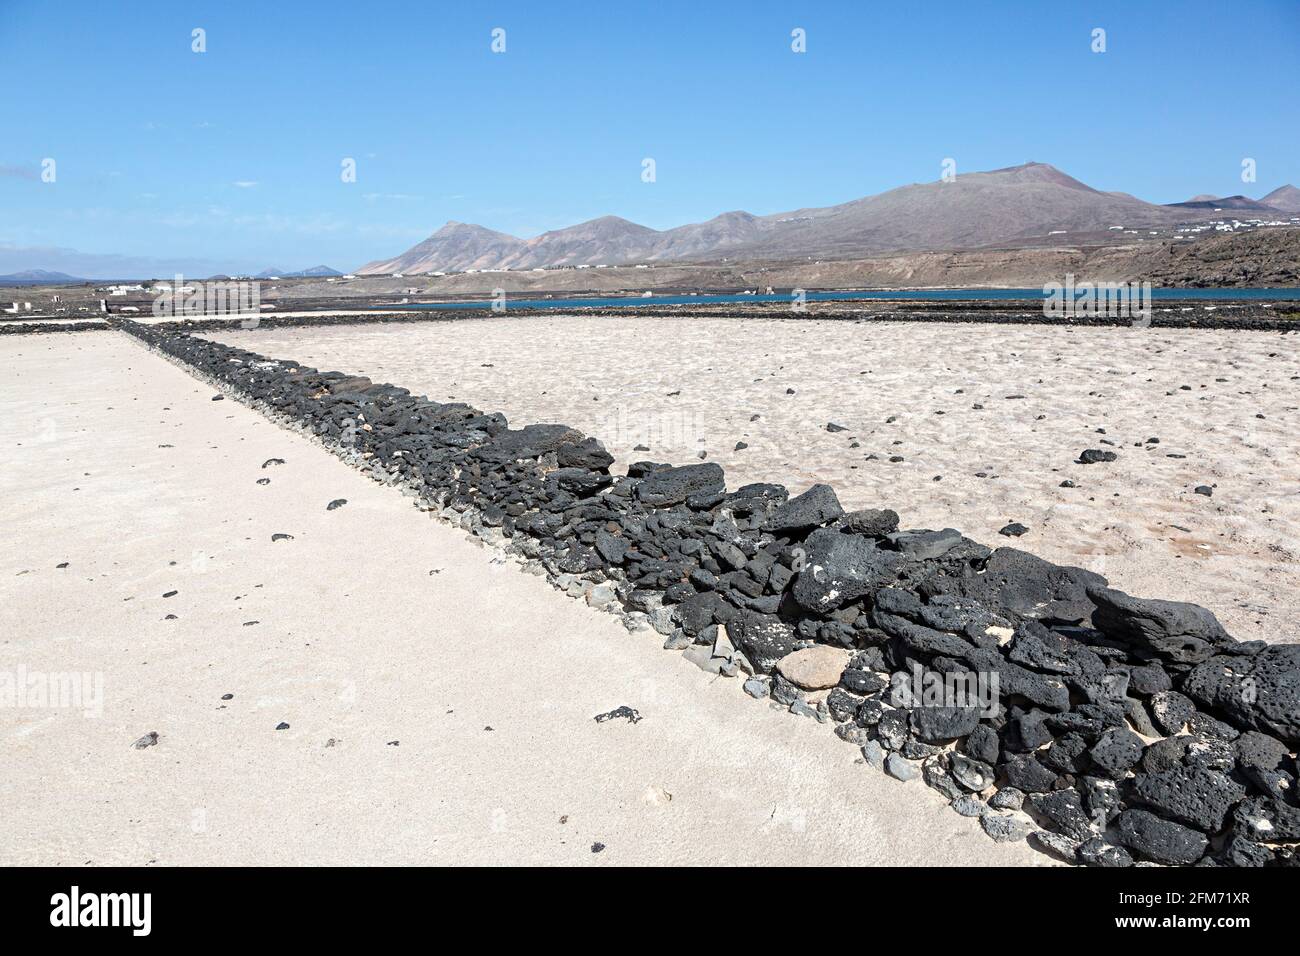 Mur sec fait de roche volcanique dans des salines sèches, Salinas de Janubio, Lanzarote, îles Canaries, Espagne Banque D'Images